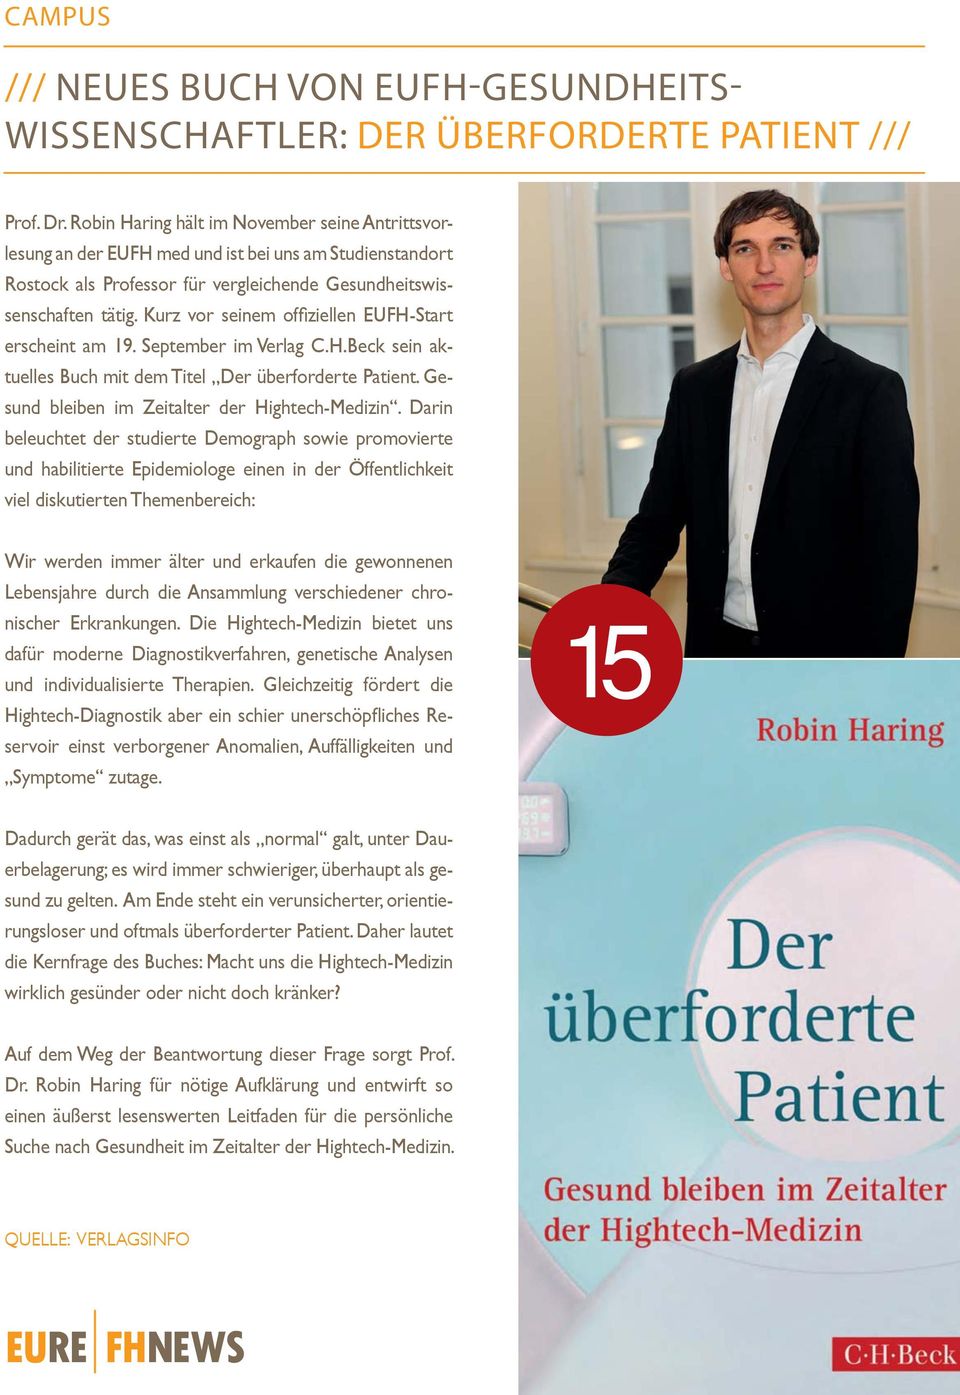 Kurz vor seinem offiziellen EUFH-Start erscheint am 19. September im Verlag C.H.Beck sein aktuelles Buch mit dem Titel Der überforderte Patient. Gesund bleiben im Zeitalter der Hightech-Medizin.